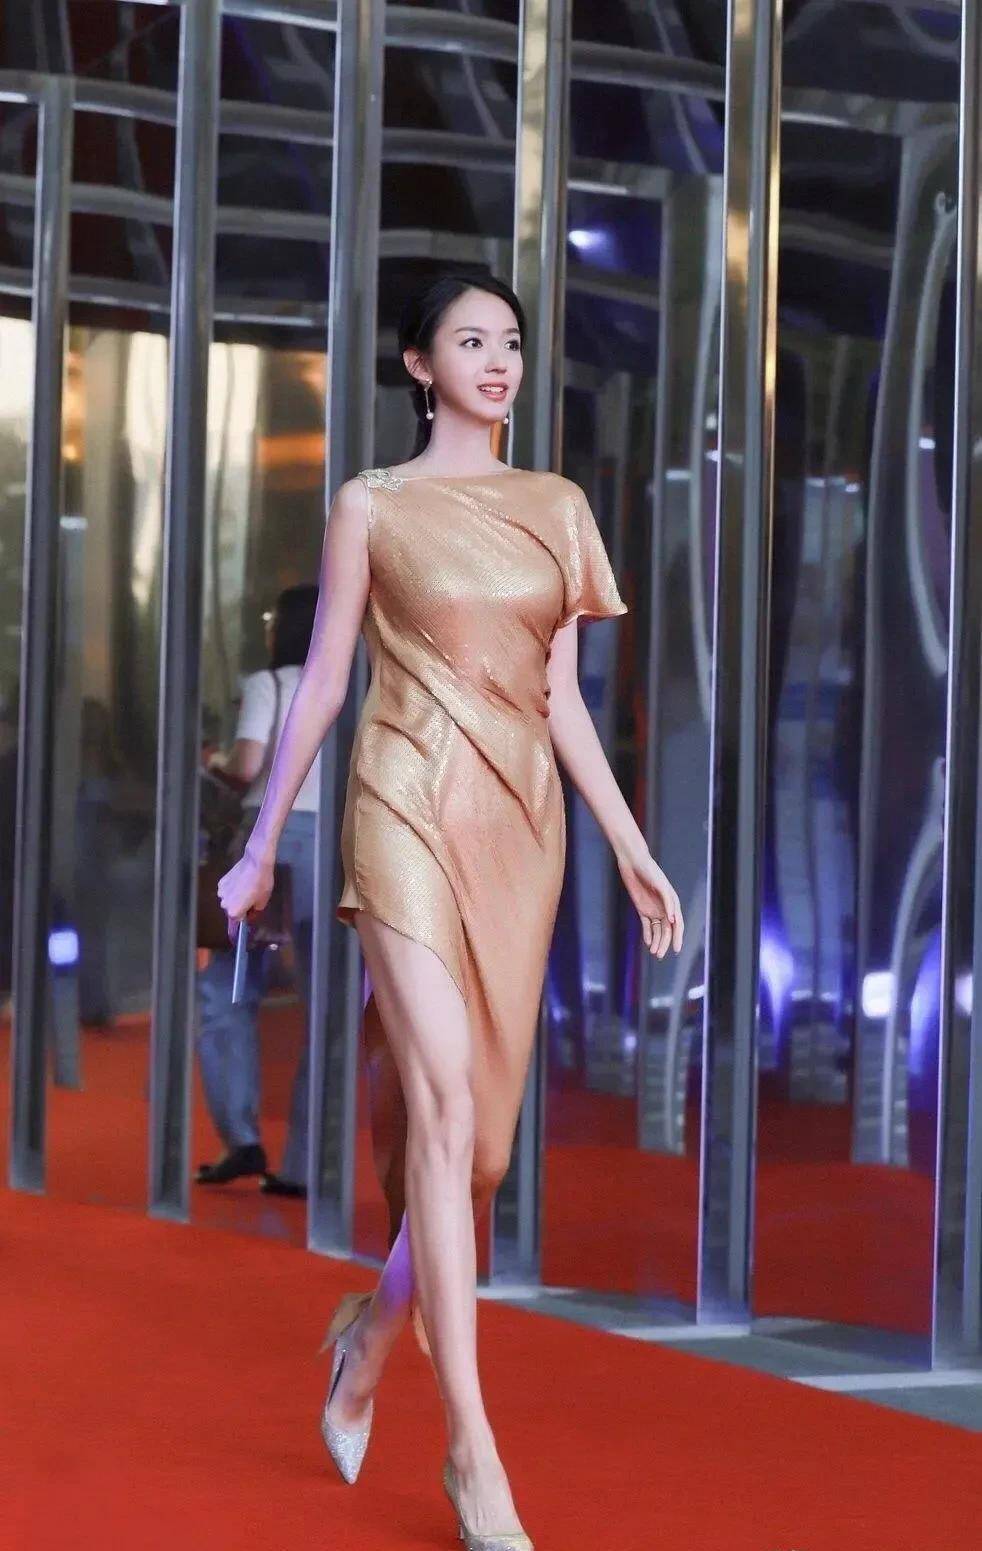 世界小姐张梓琳写真美若天仙!肤白貌美大长腿性感撩人